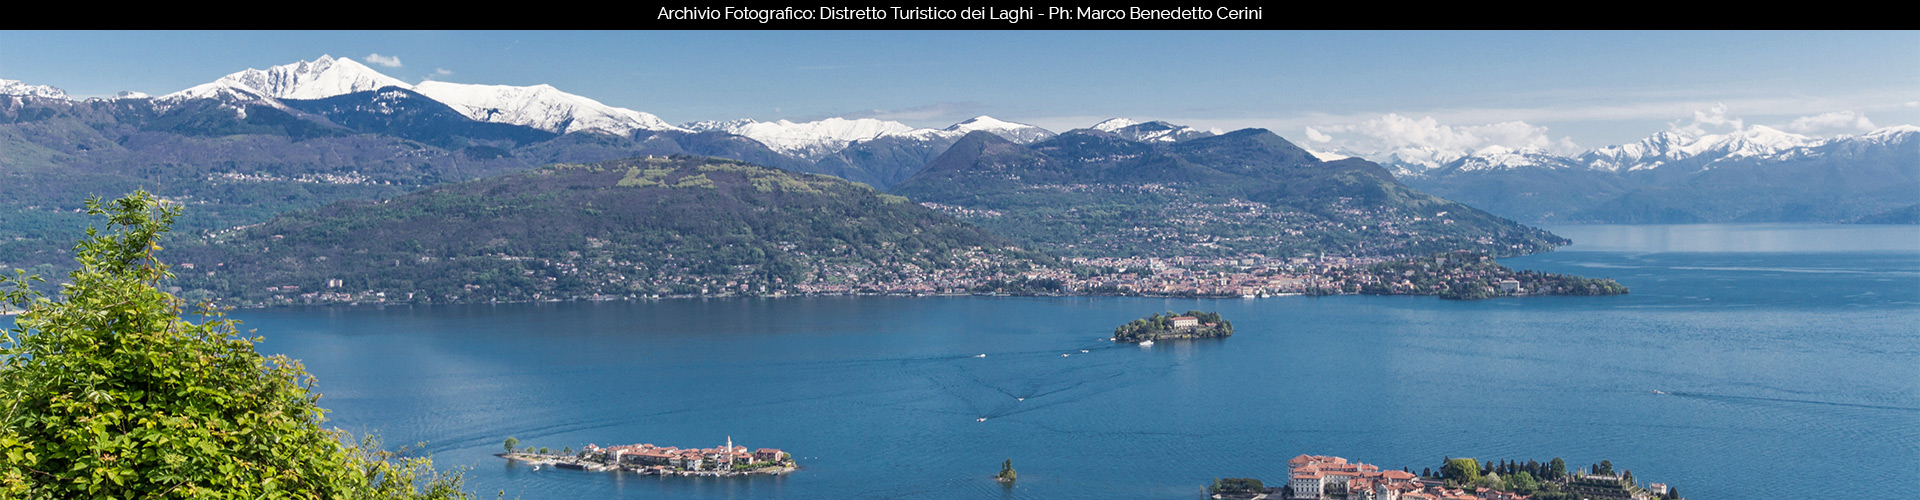 Distretto Turistico dei Laghi - Lago Maggiore, Lago d’Orta, Lago di Mergozzo e Valli dell’Ossola